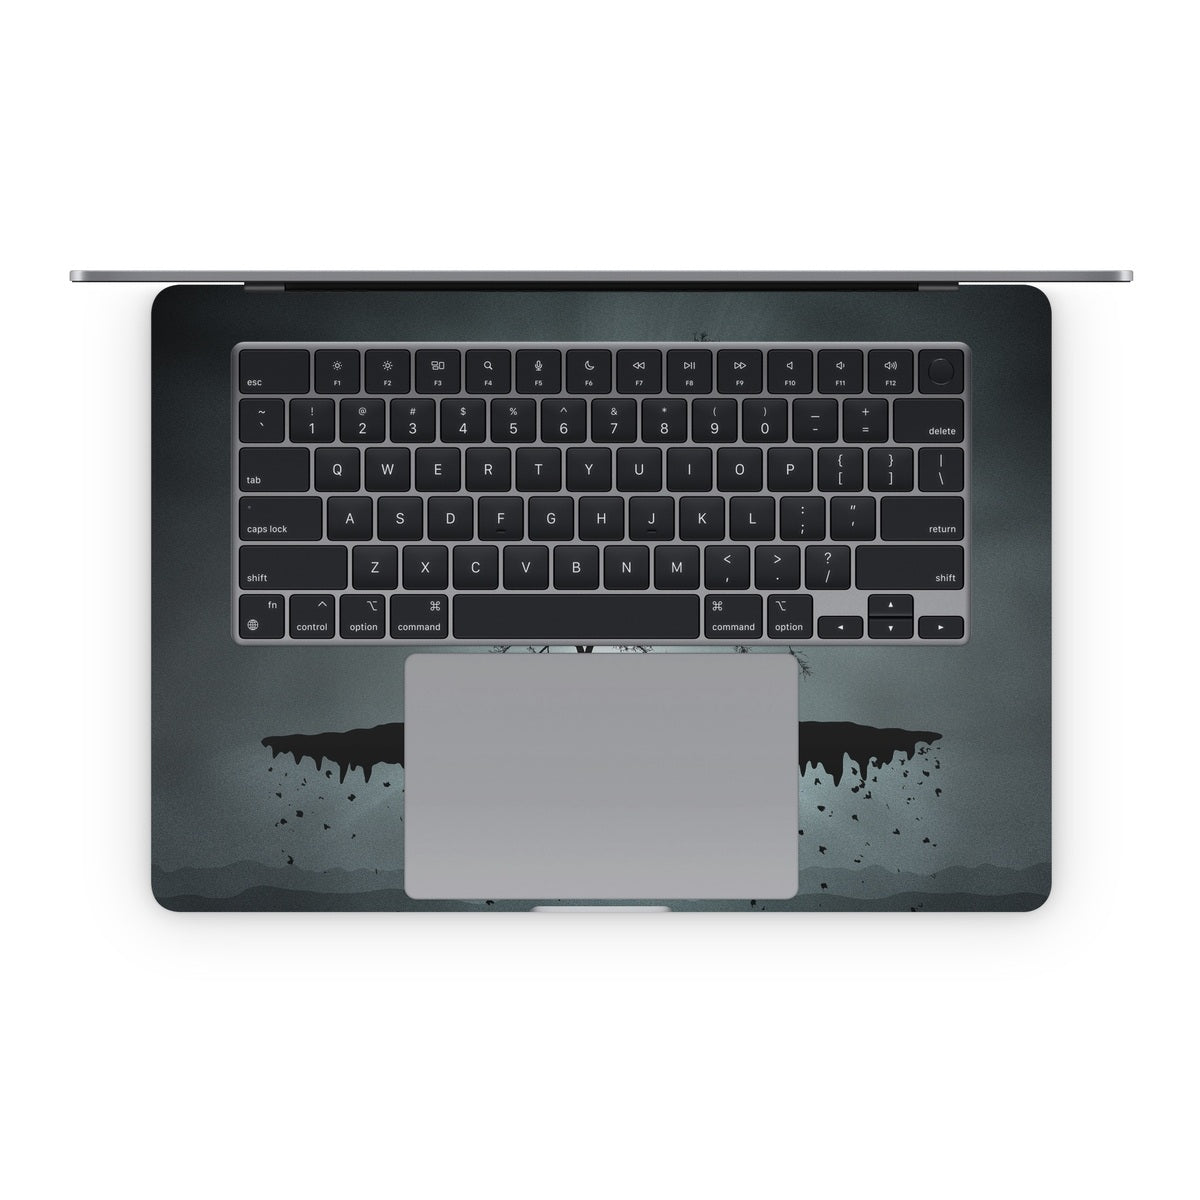 Flying Tree Black - Apple MacBook Skin